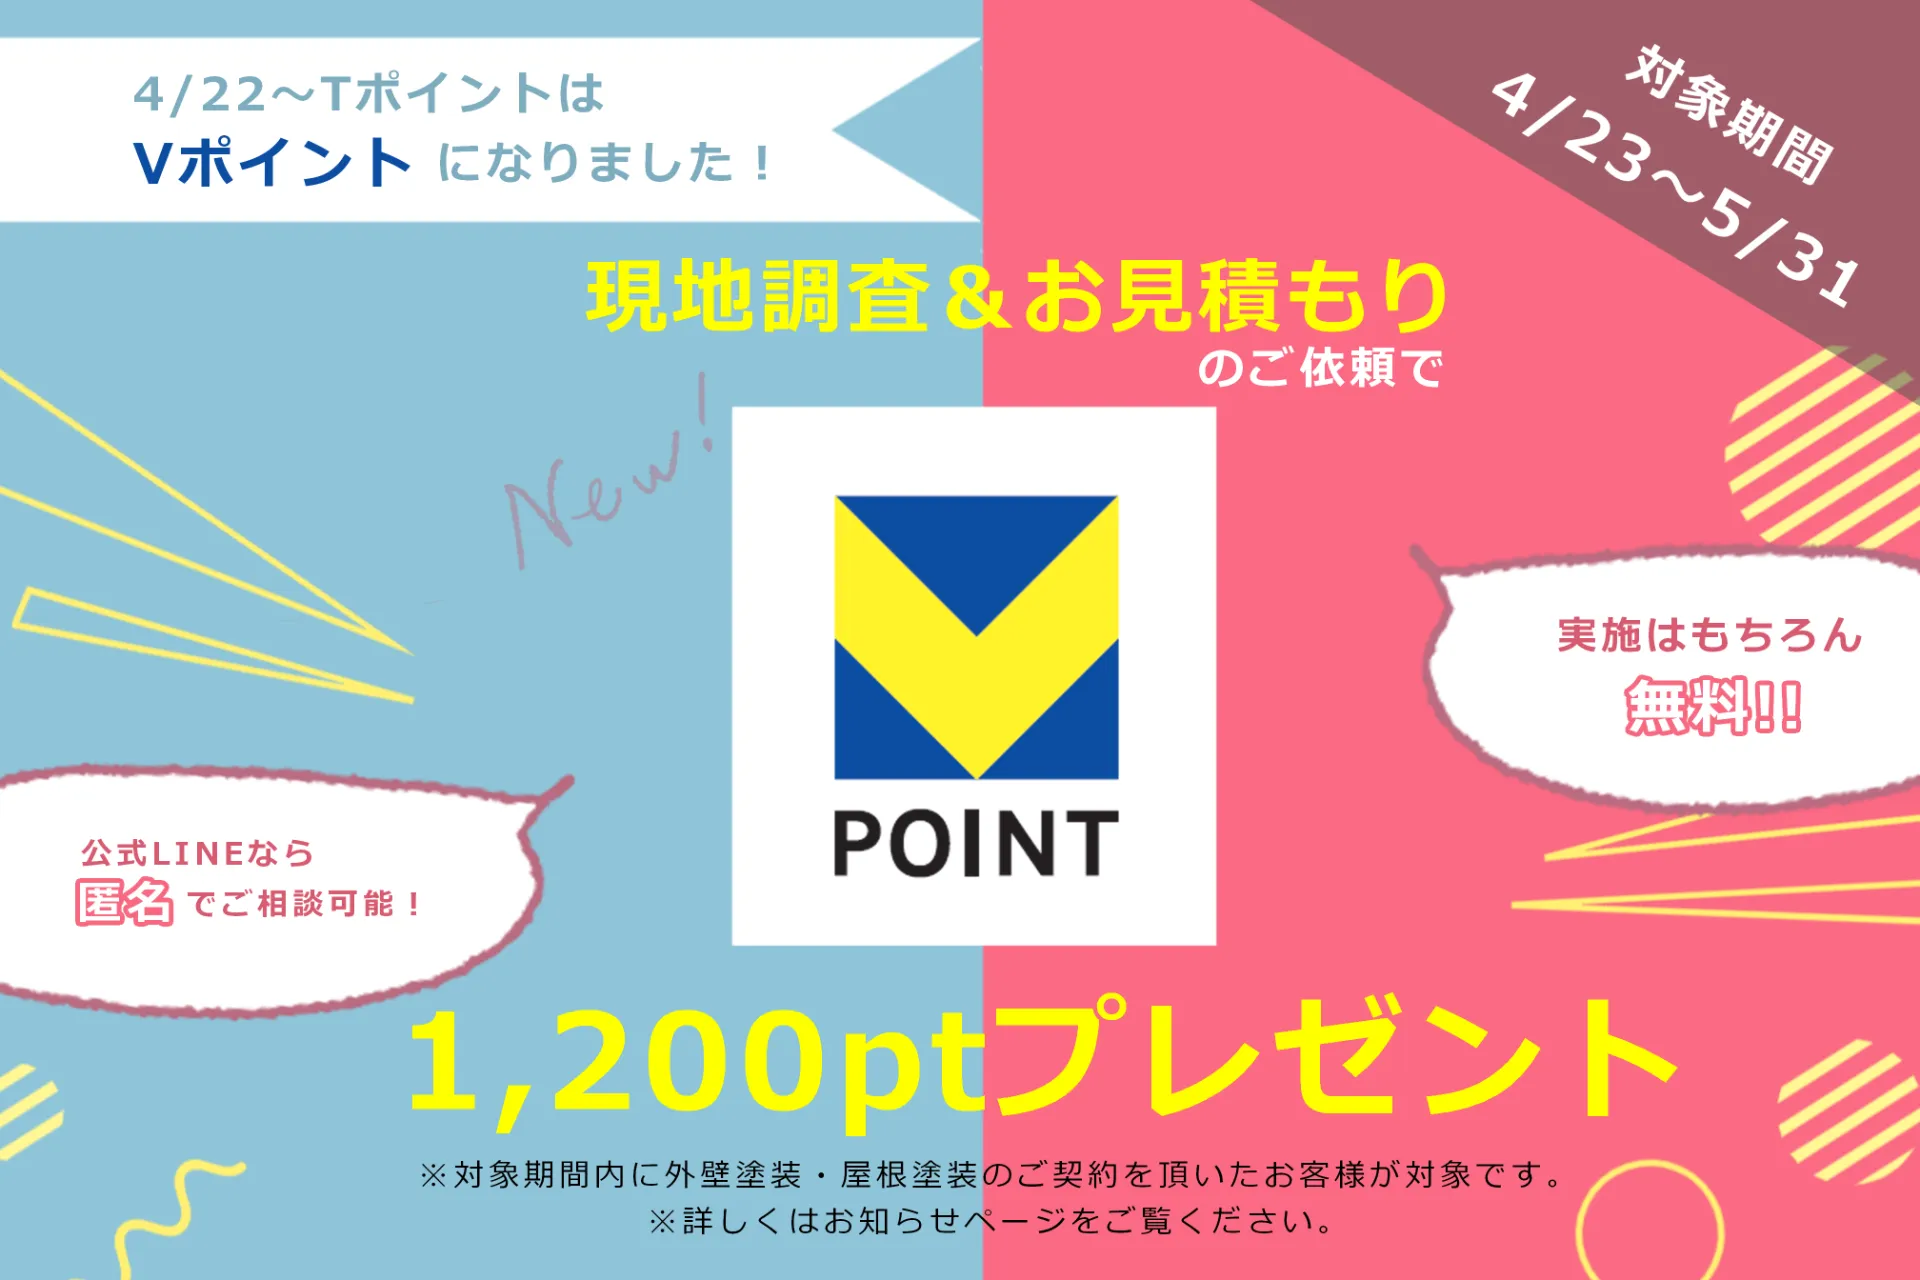 横須賀市で外壁塗装工事するなら市川工務店！Vポイントがお得にたまるキャンペーンのご案内です。